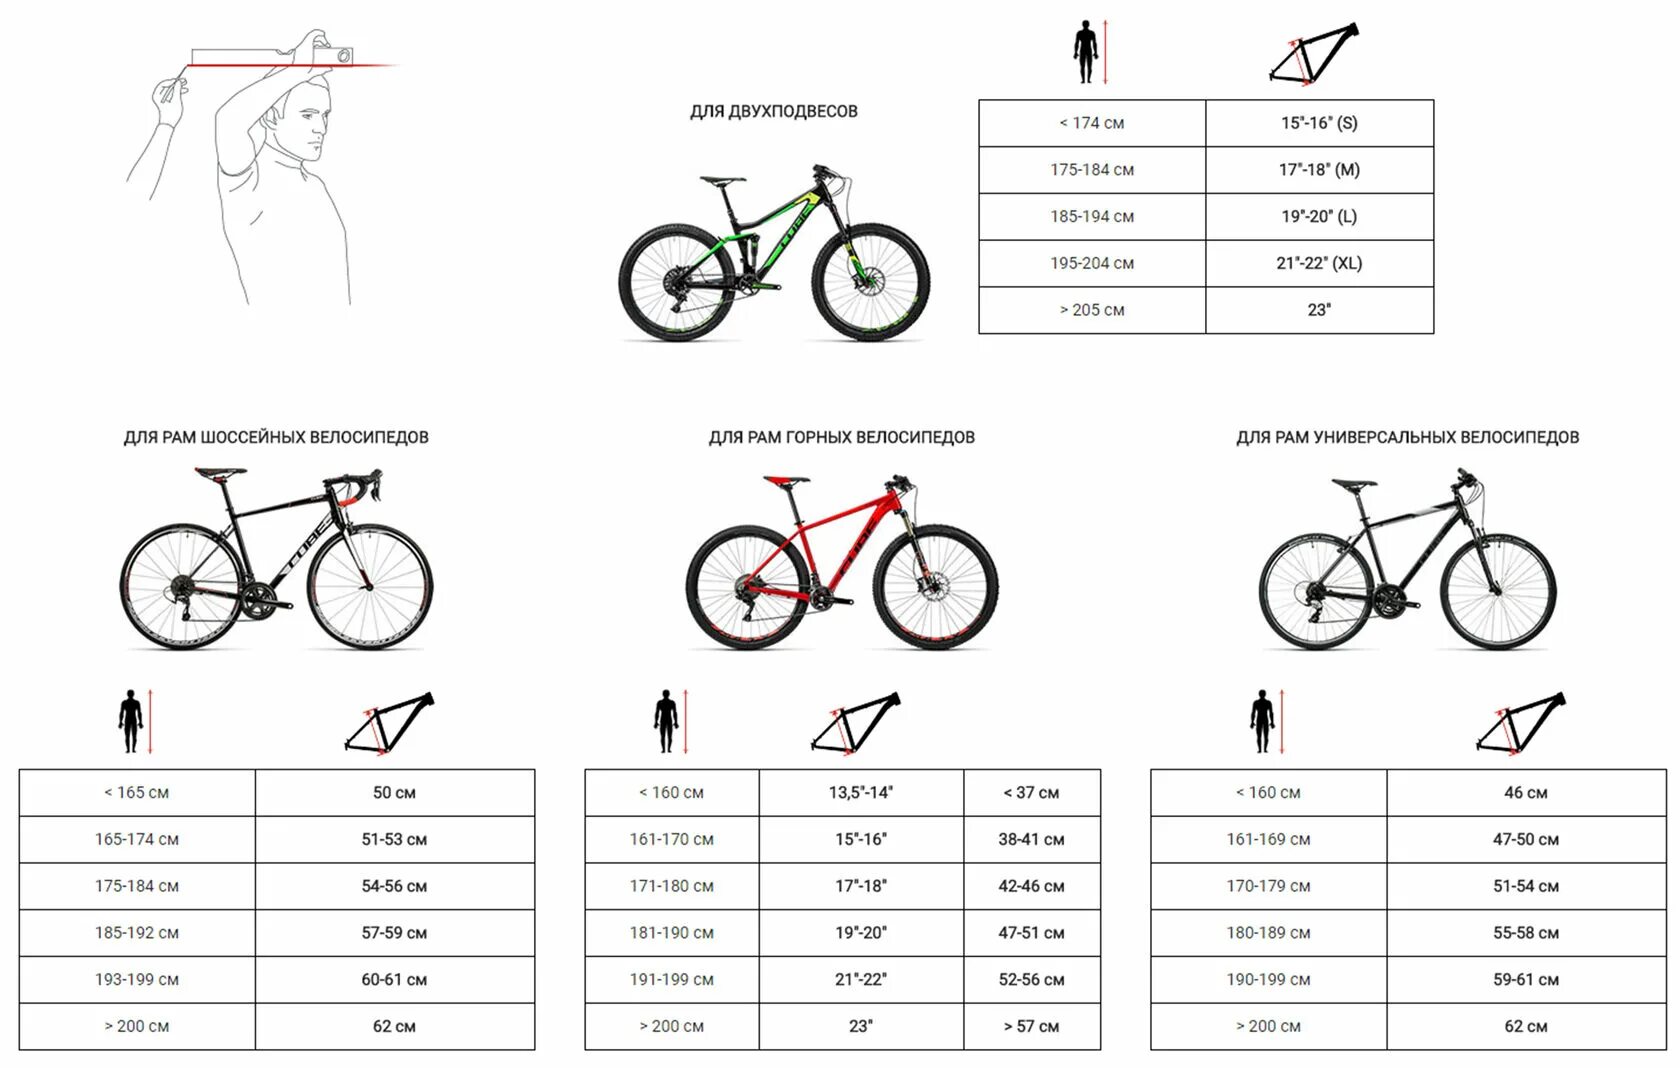 21 рама велосипеда на какой. Велосипед stels размер рамы и рост. Как выбрать размер горного велосипеда по росту таблица. Как выбрать параметры велосипеда по росту и весу таблица. Рост и рама велосипеда таблица.